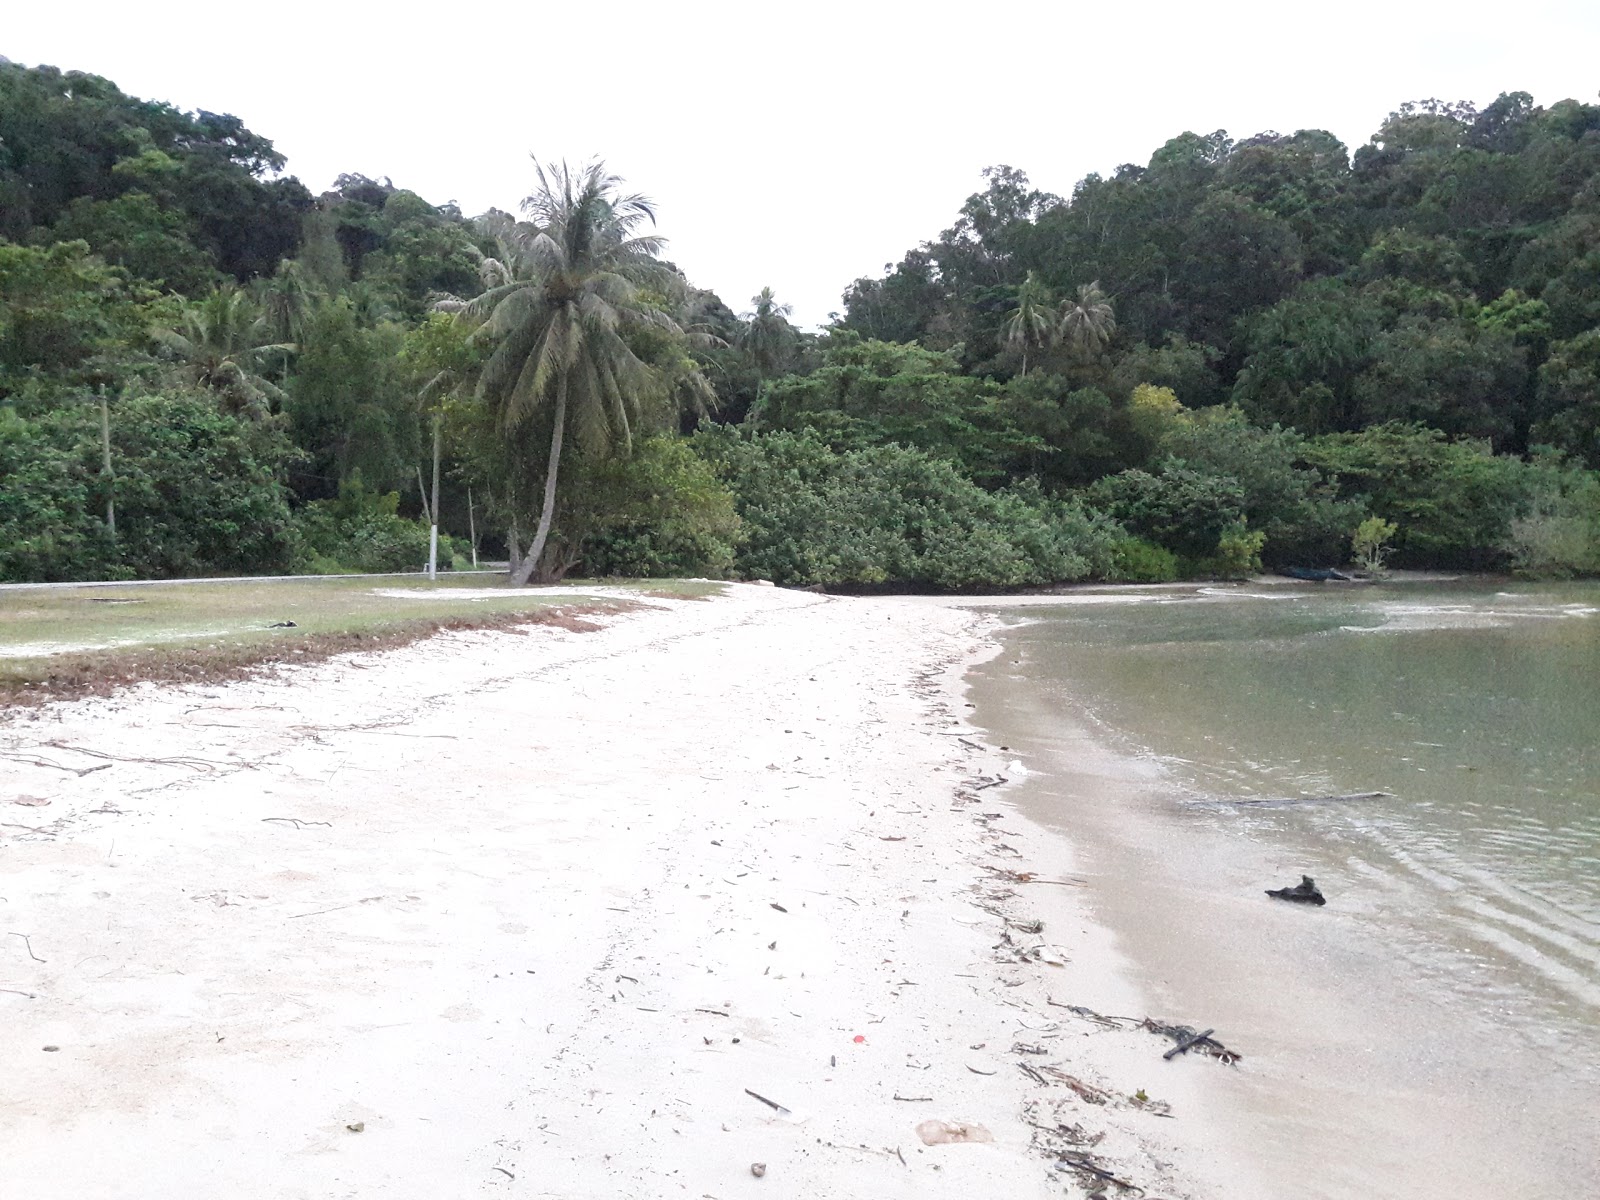 Zdjęcie Teluk Dalam Beach - popularne miejsce wśród znawców relaksu